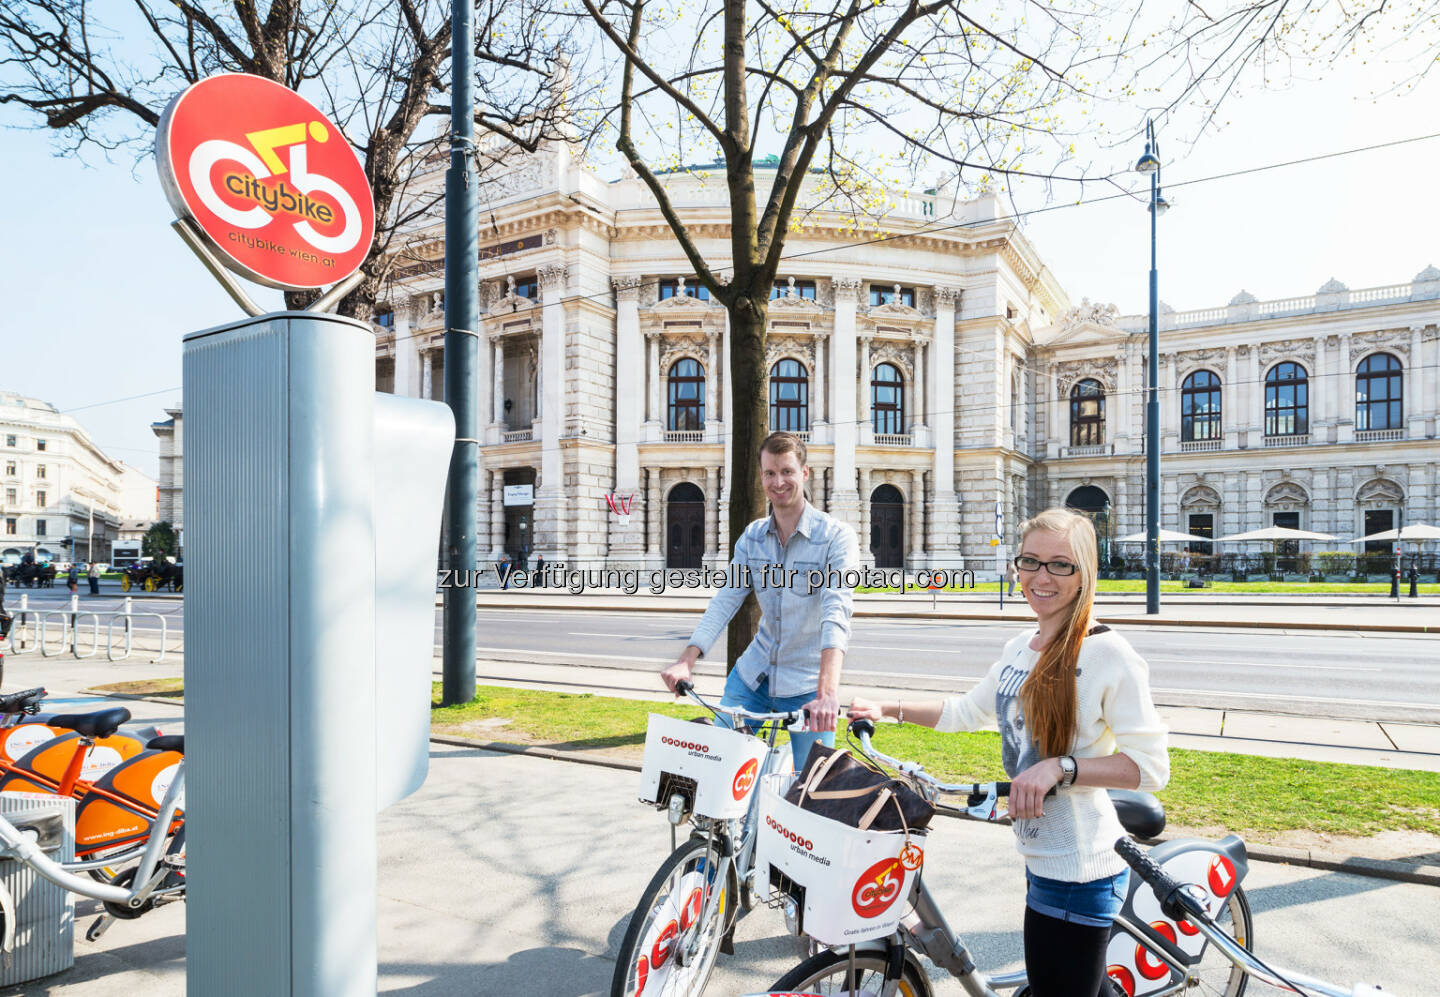 Das Erfolgsprojekt Citybike Wien hat sich auch 2016 sehr positiv entwickelt - Gewista Werbeges.m.b.H.: Citybike Wien – Jahresbilanz 2016 (Fotocredit: Gewista)